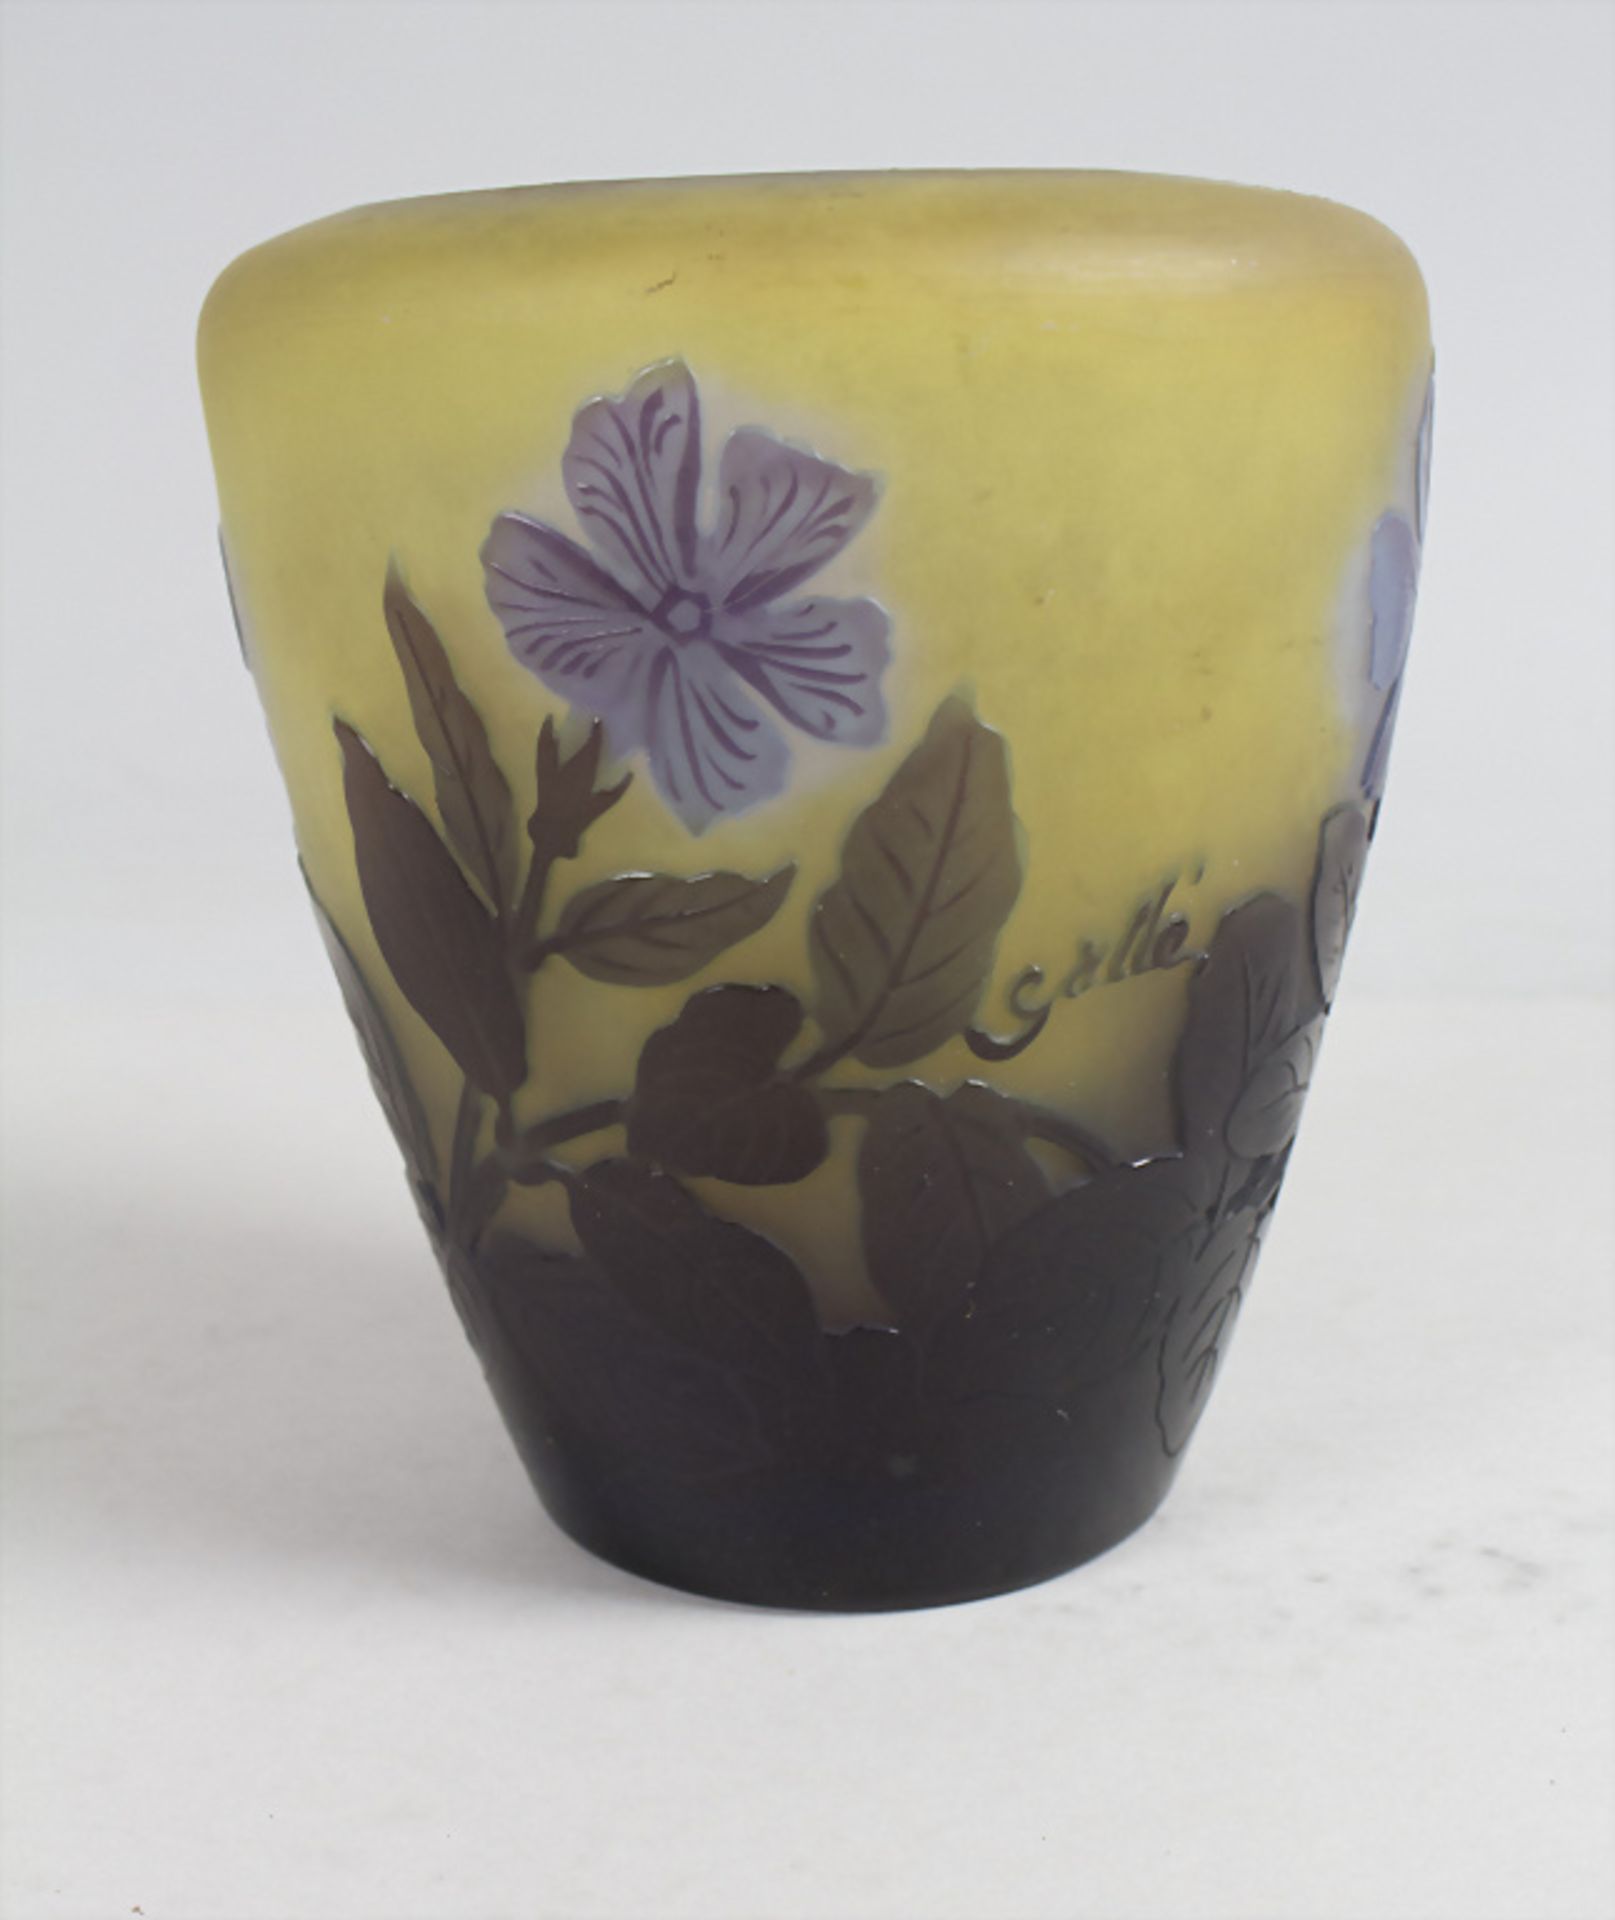 Jugendstil Vase mit Clematis / An Art Nouveau cameo glass vase with clematis, Emile Gallé, ... - Image 2 of 5